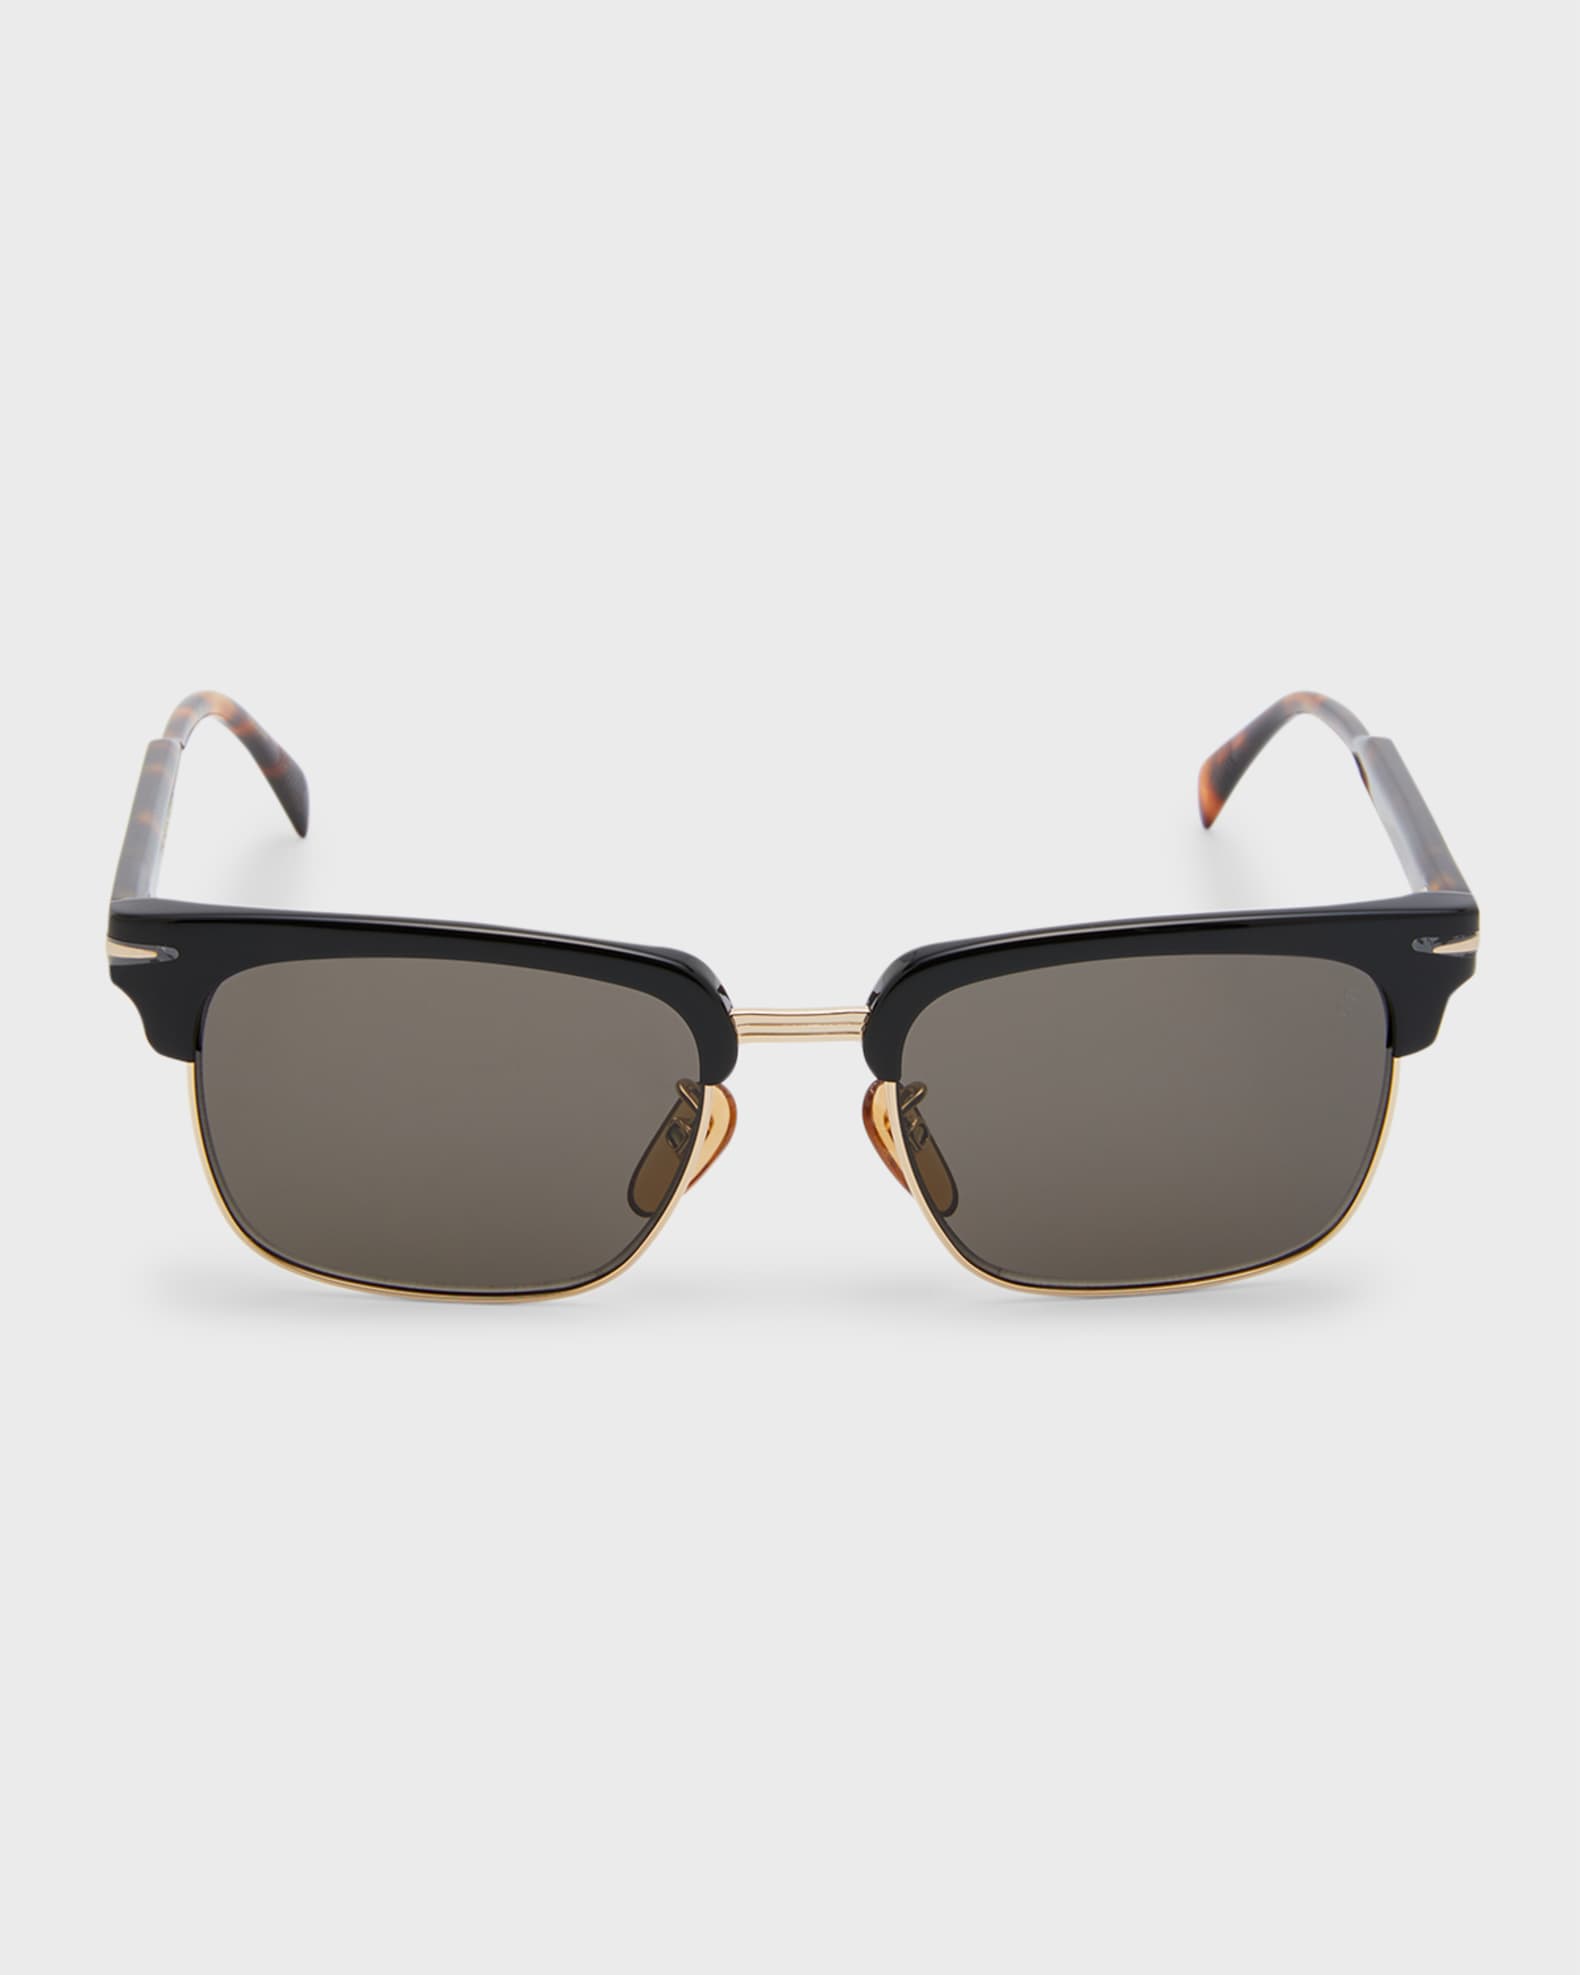 David Beckham Men's Half-Rim Rectangle Sunglasses | Neiman Marcus